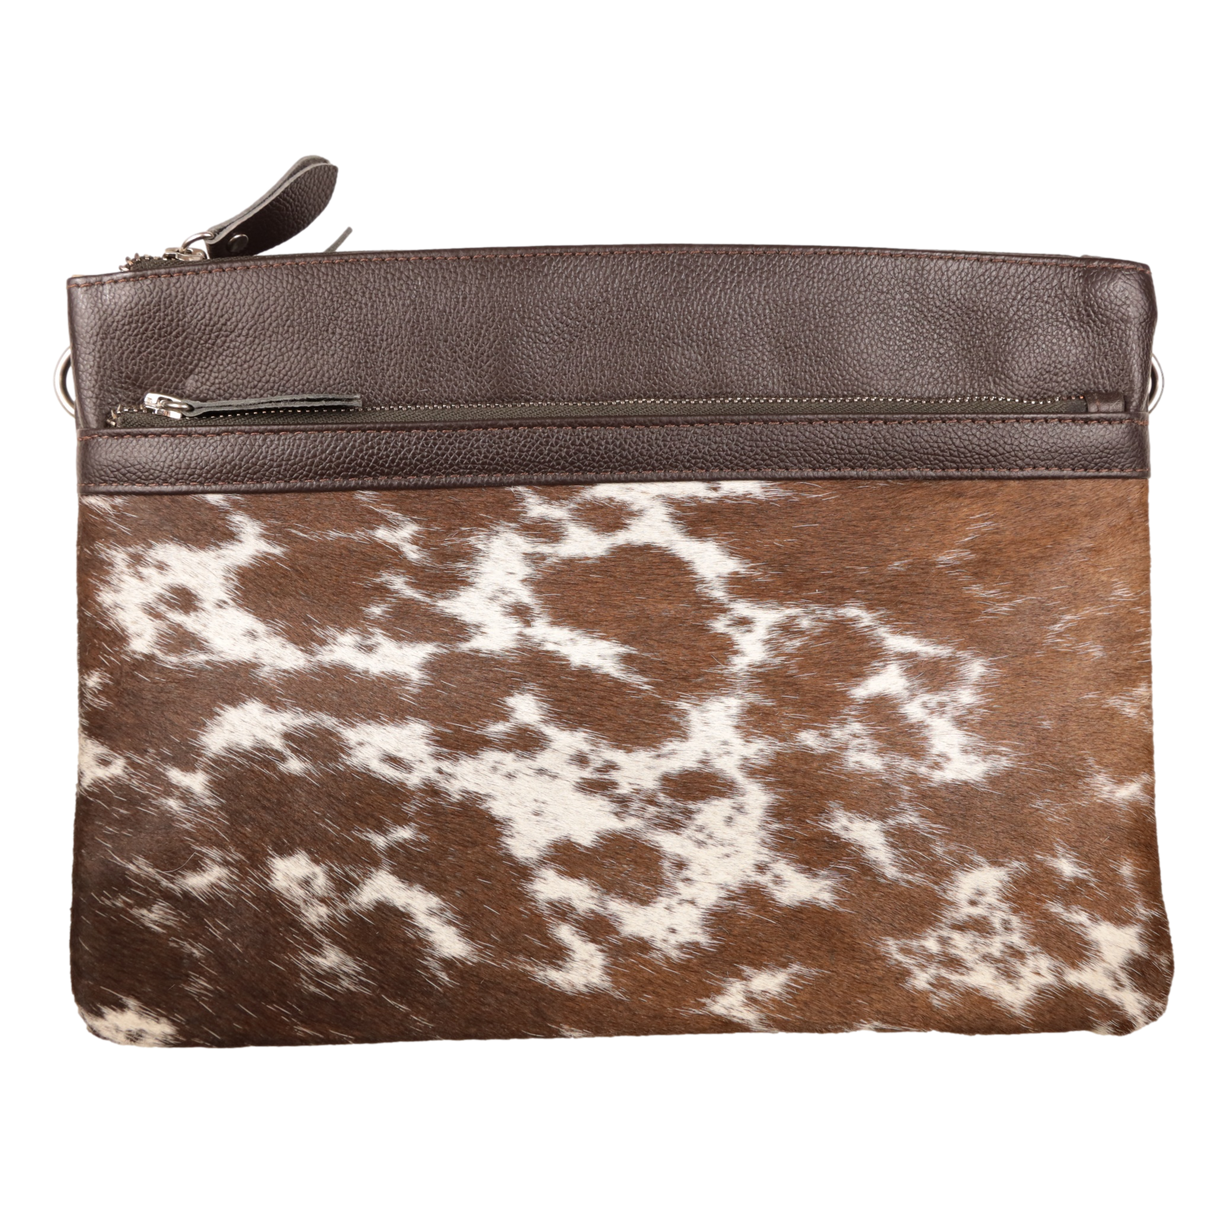 India Cowhide Leather Handbag - Dark Brown